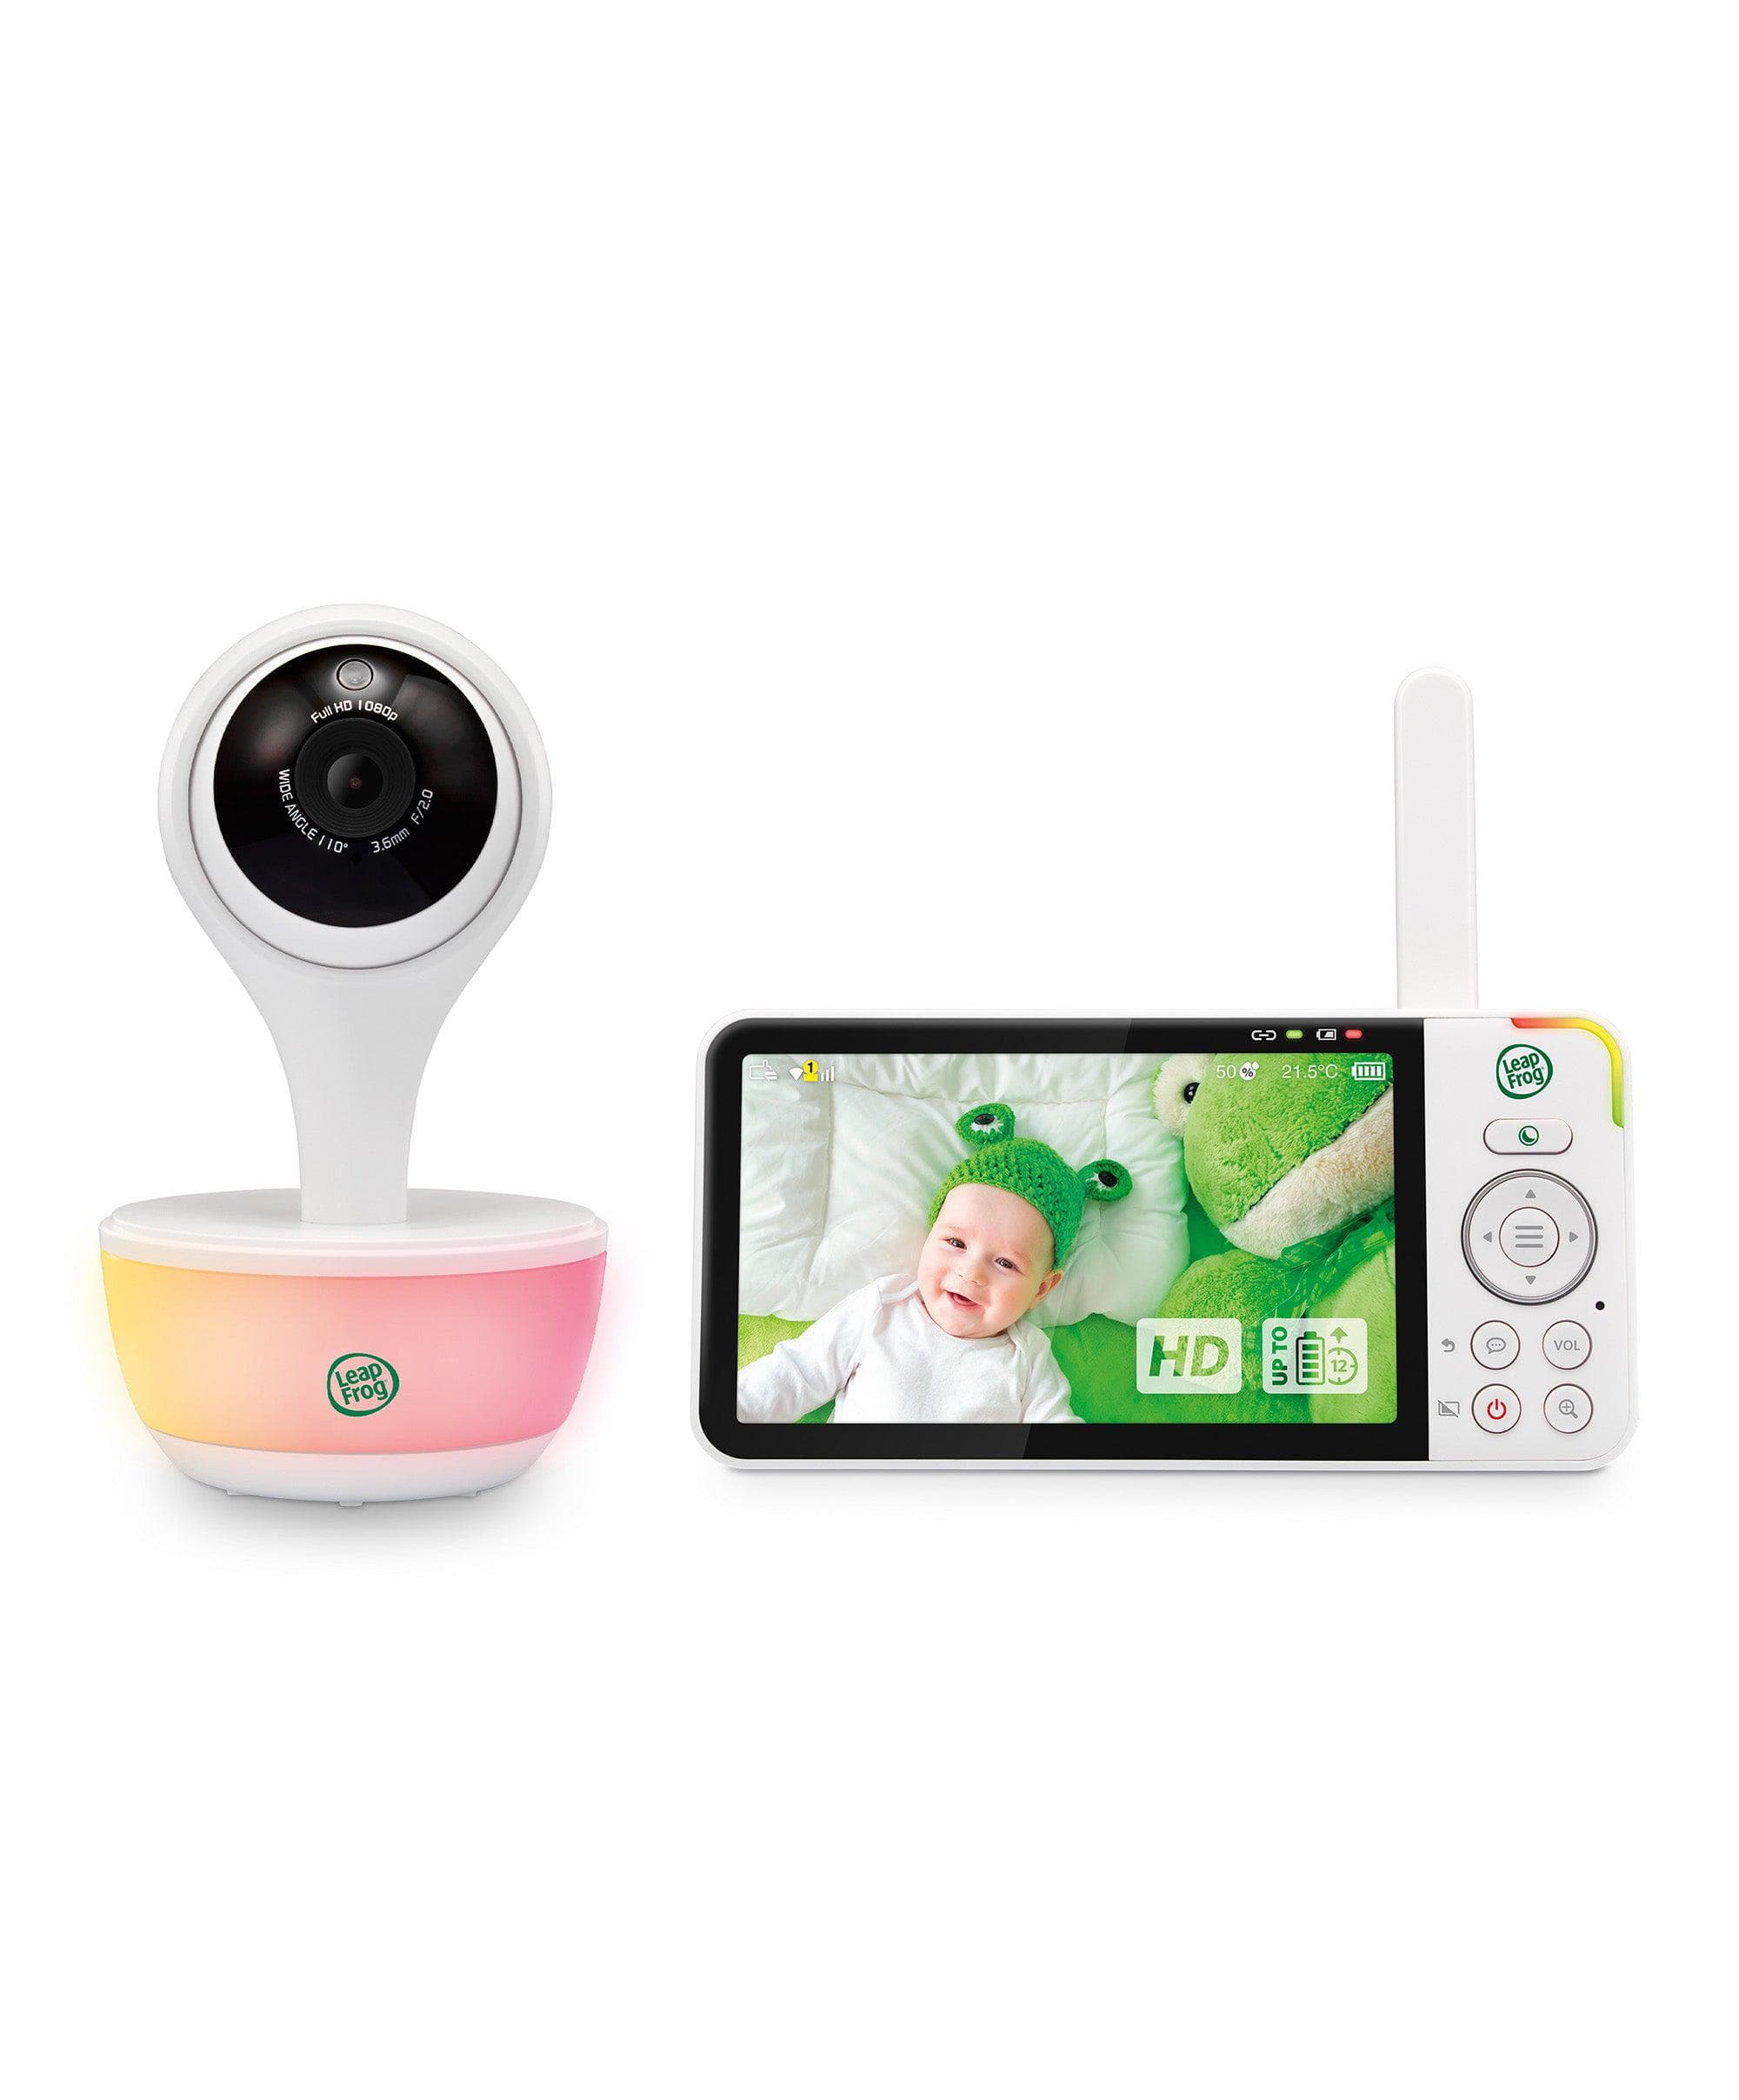 Smart Baby Monitor Cameras | Baby Safety – Mamas & Papas UK